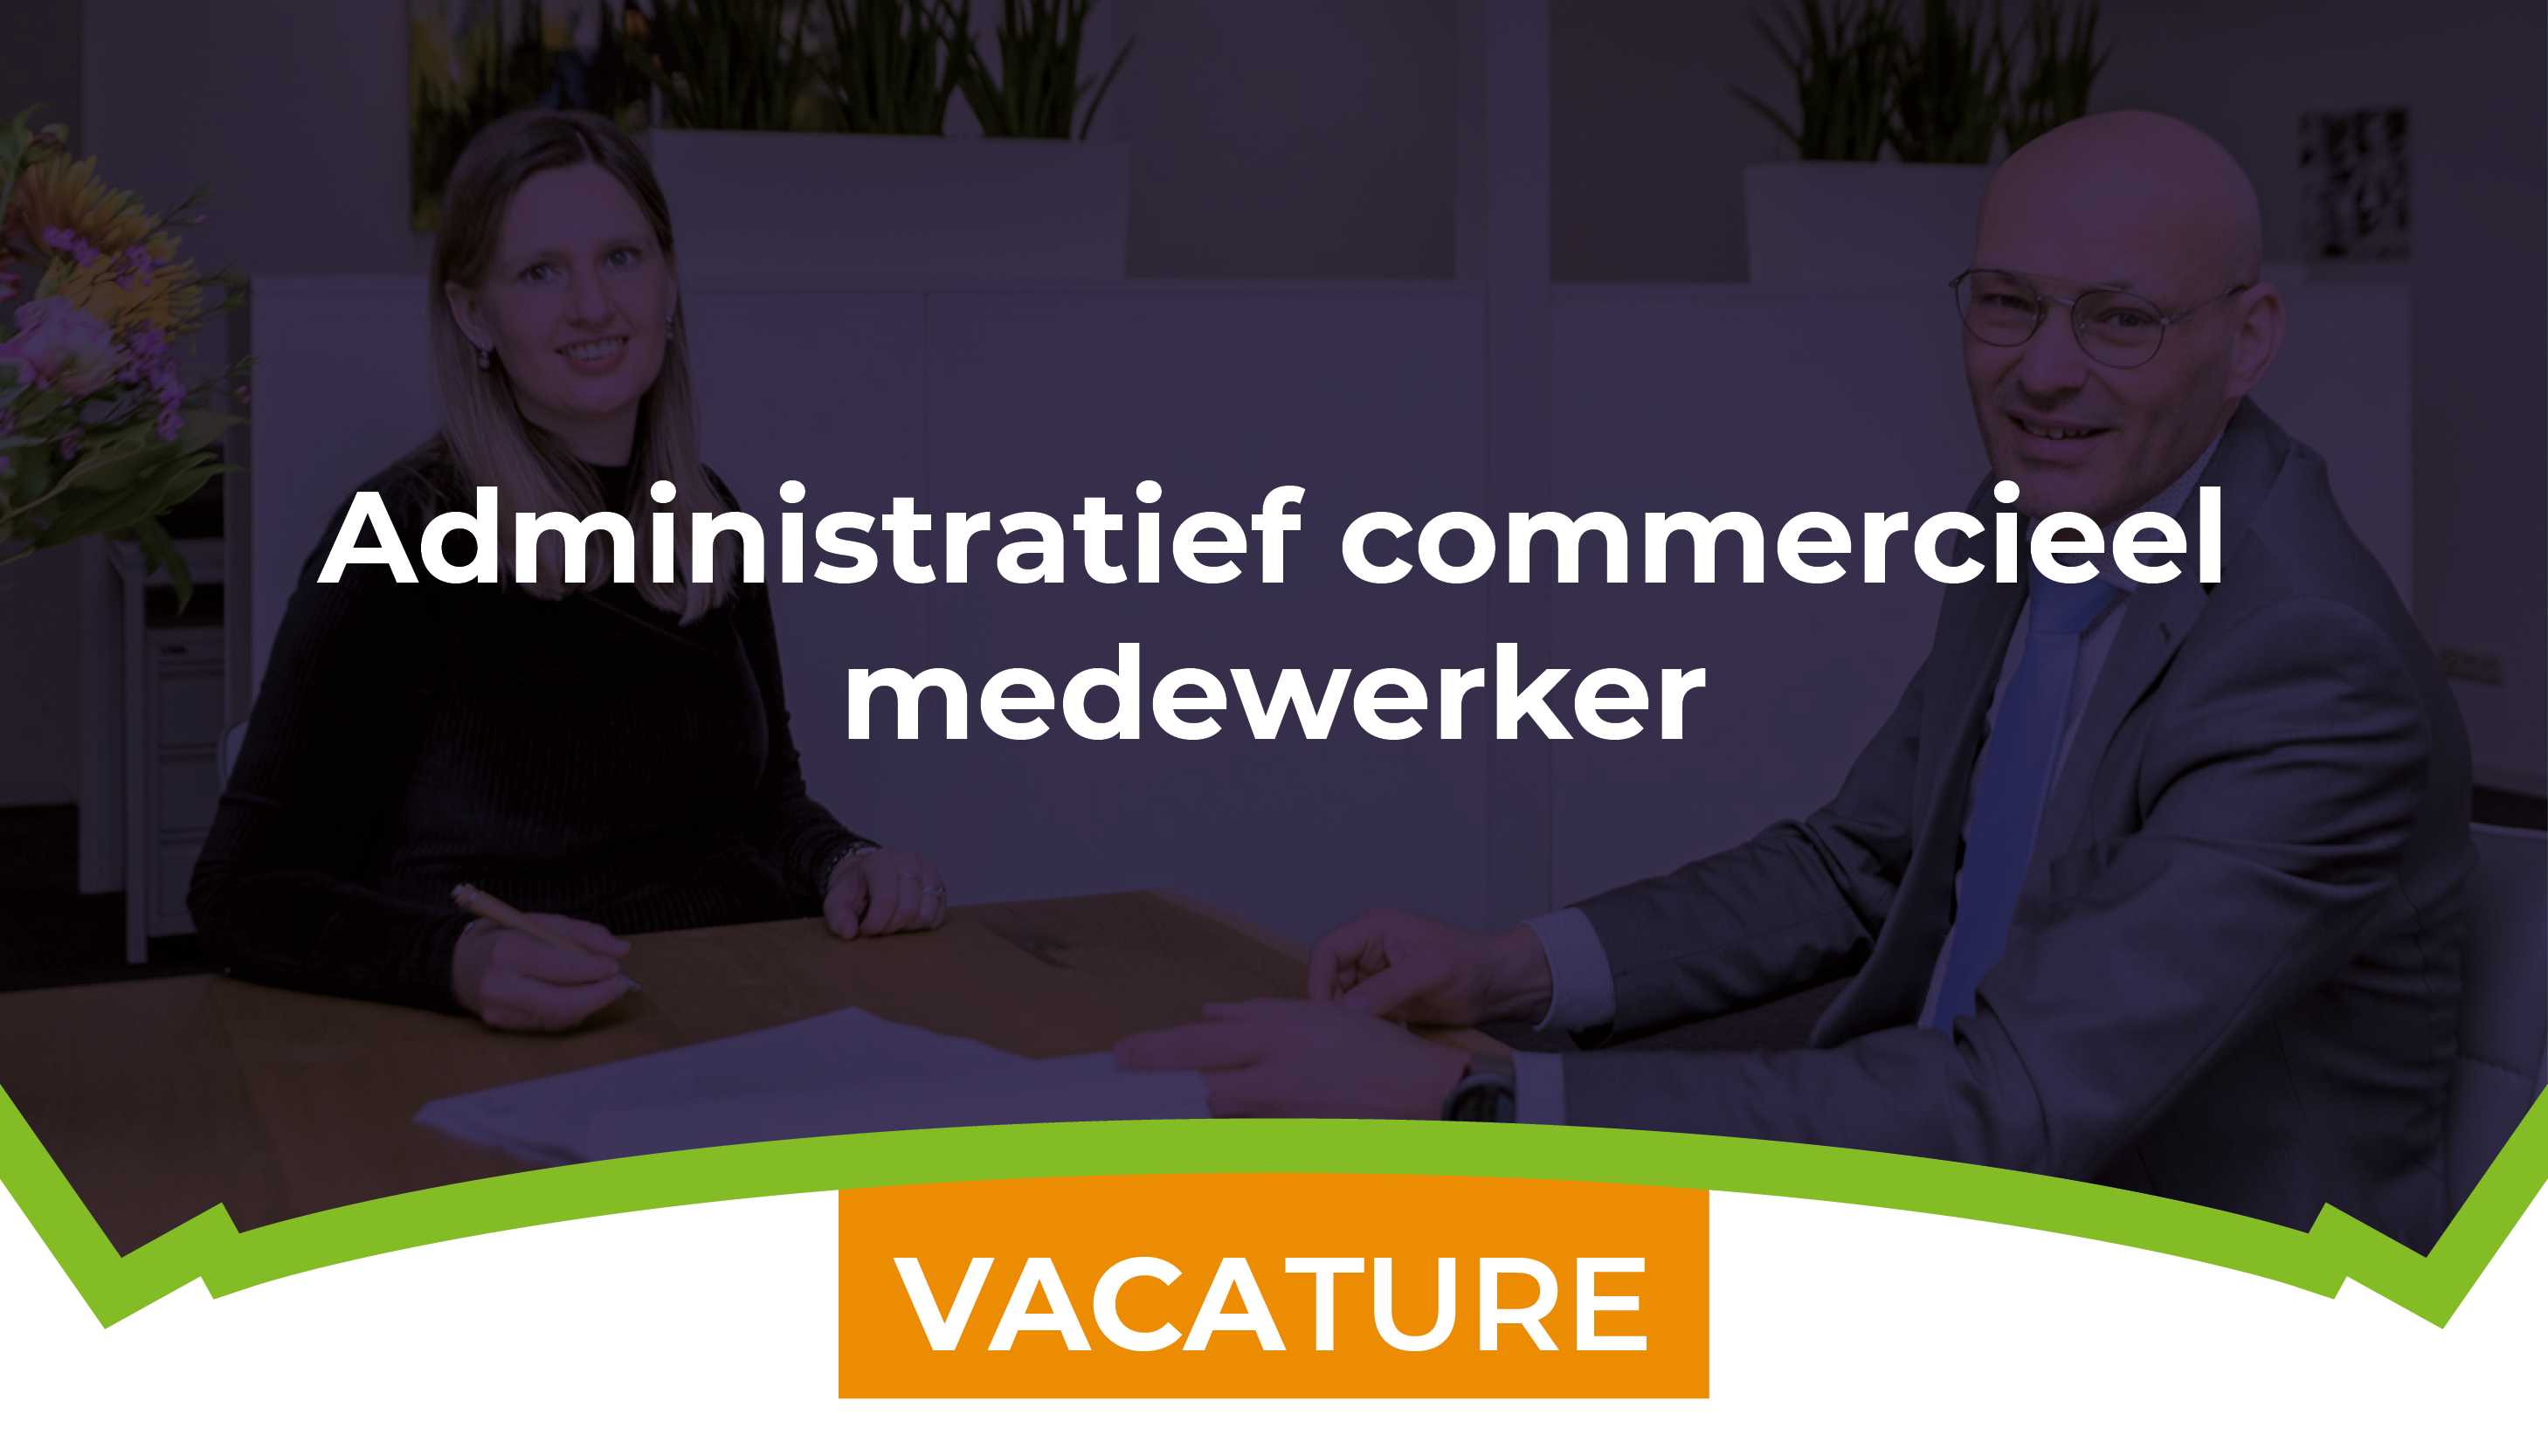 Vacature Administratief commercieel medewerker 2022 – Banner Website – 700x400px